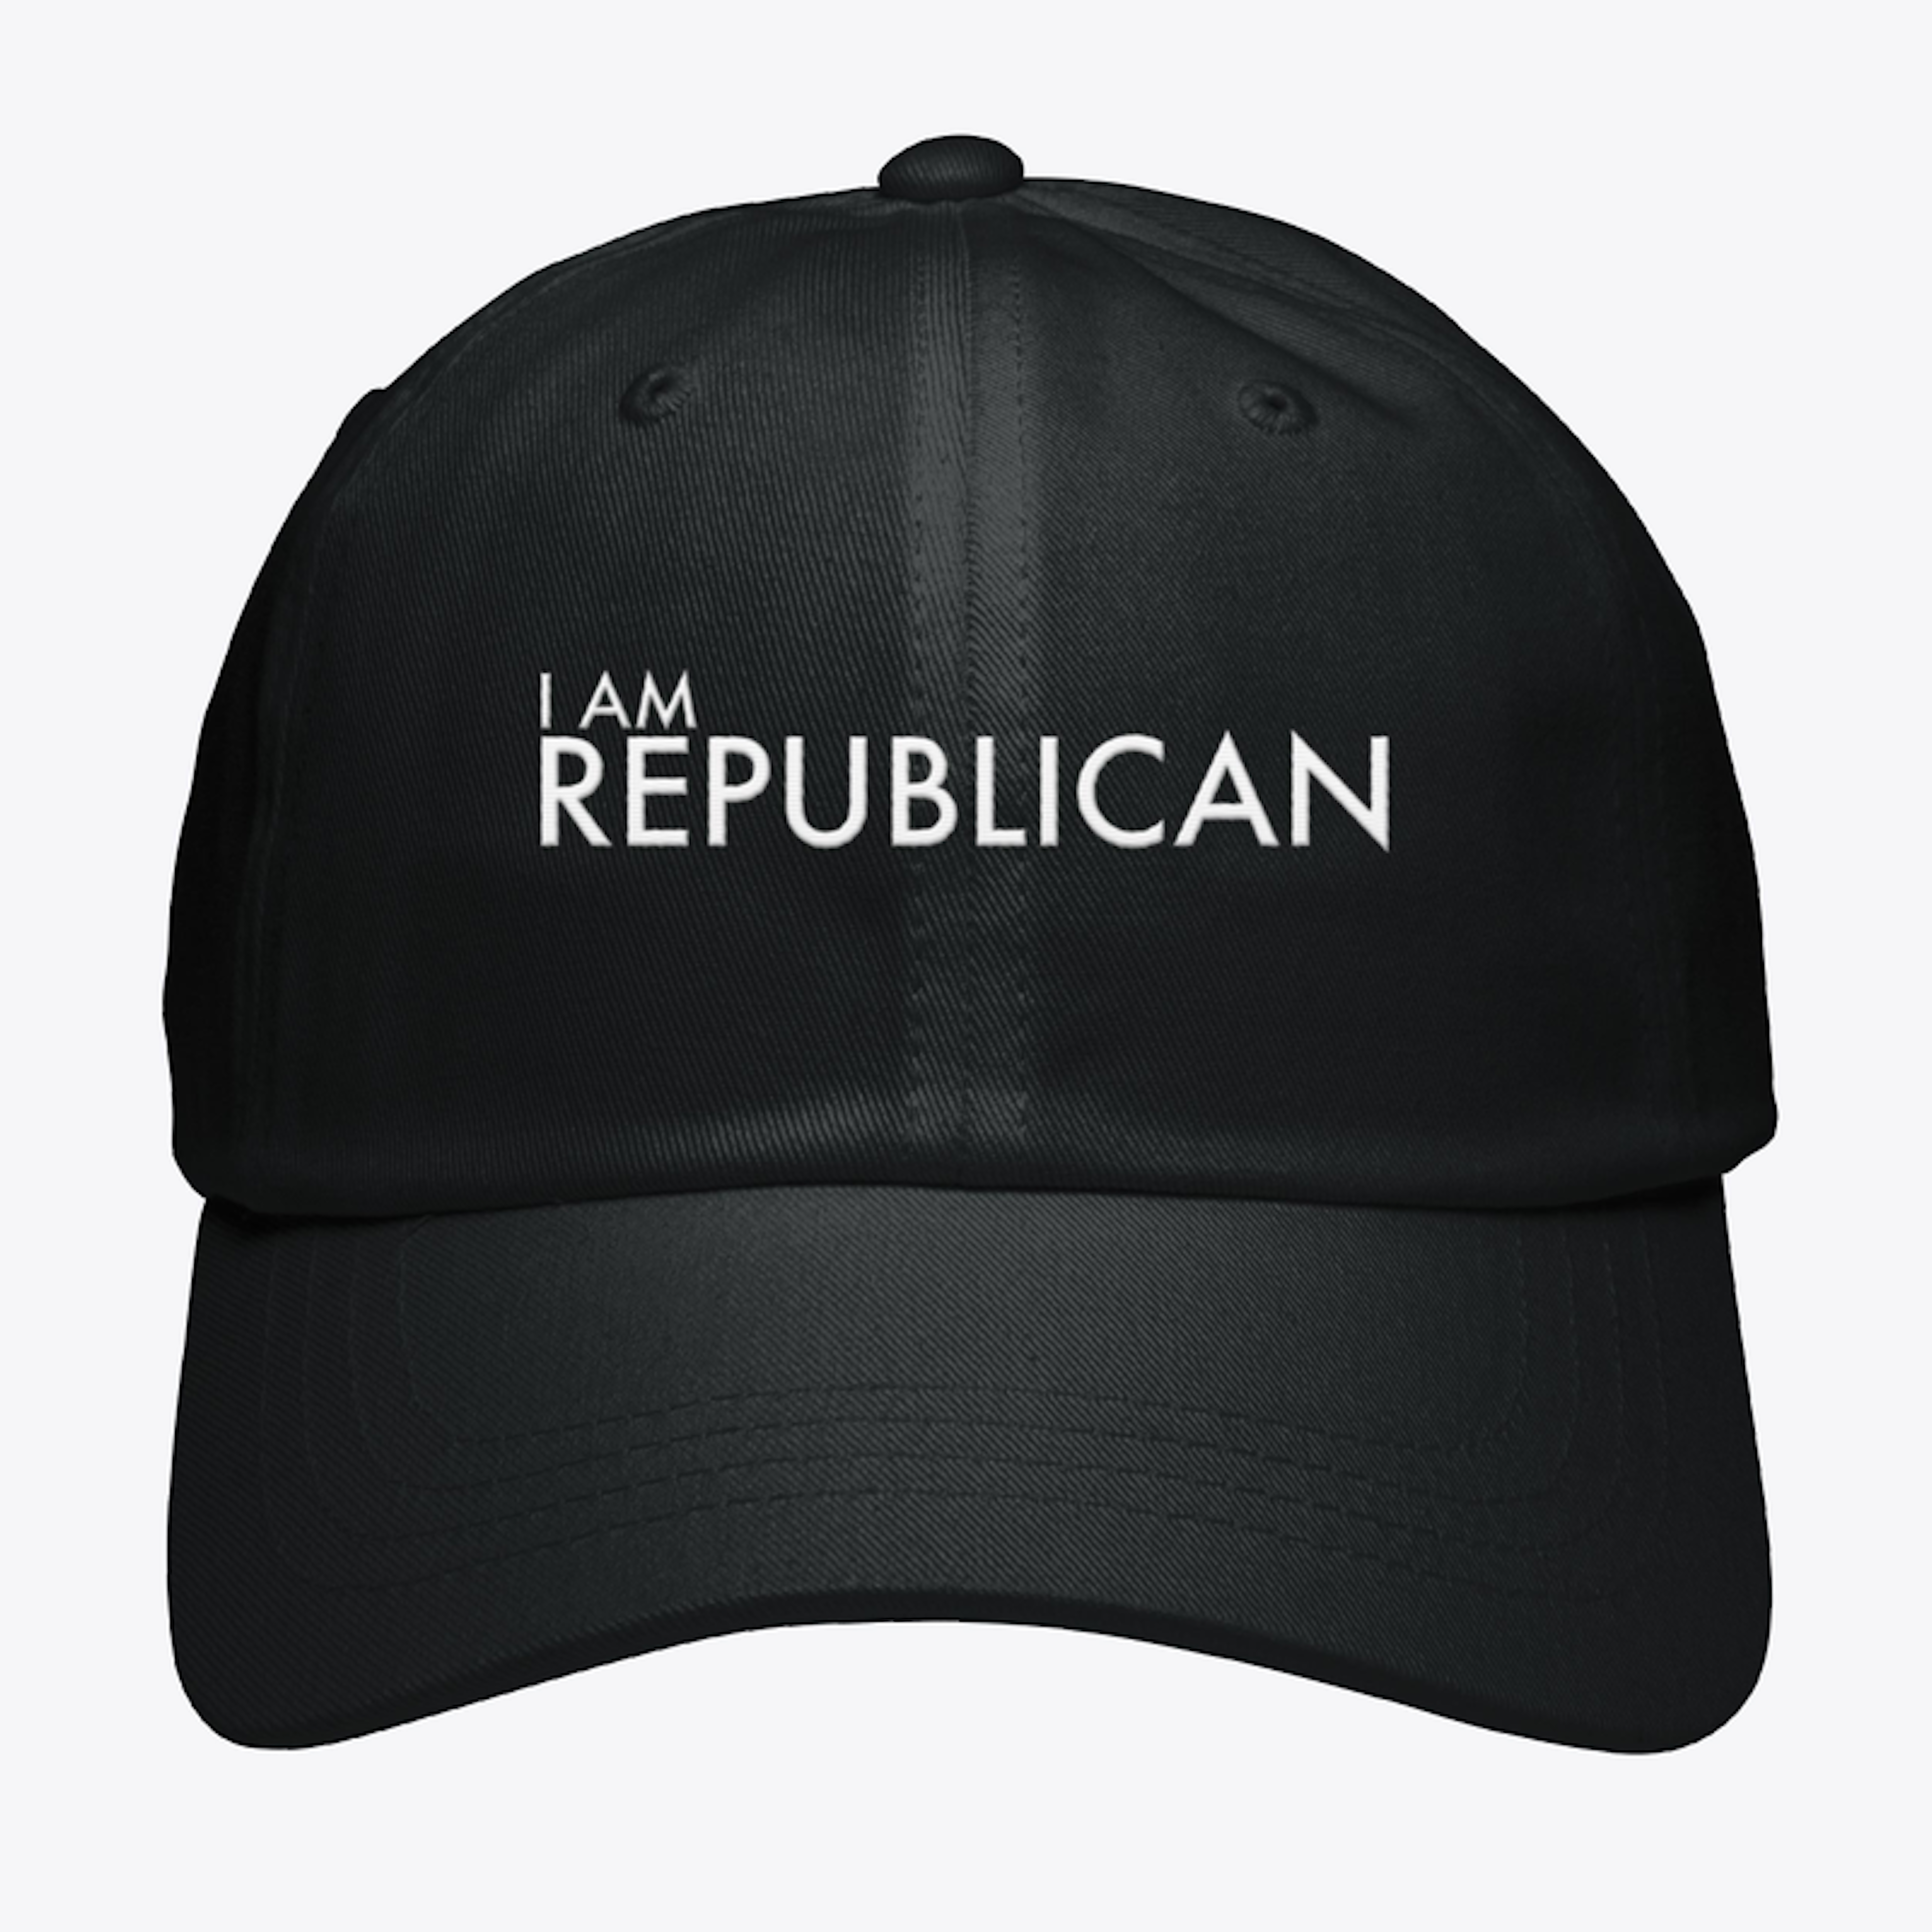 I AM REPUBLICAN HAT